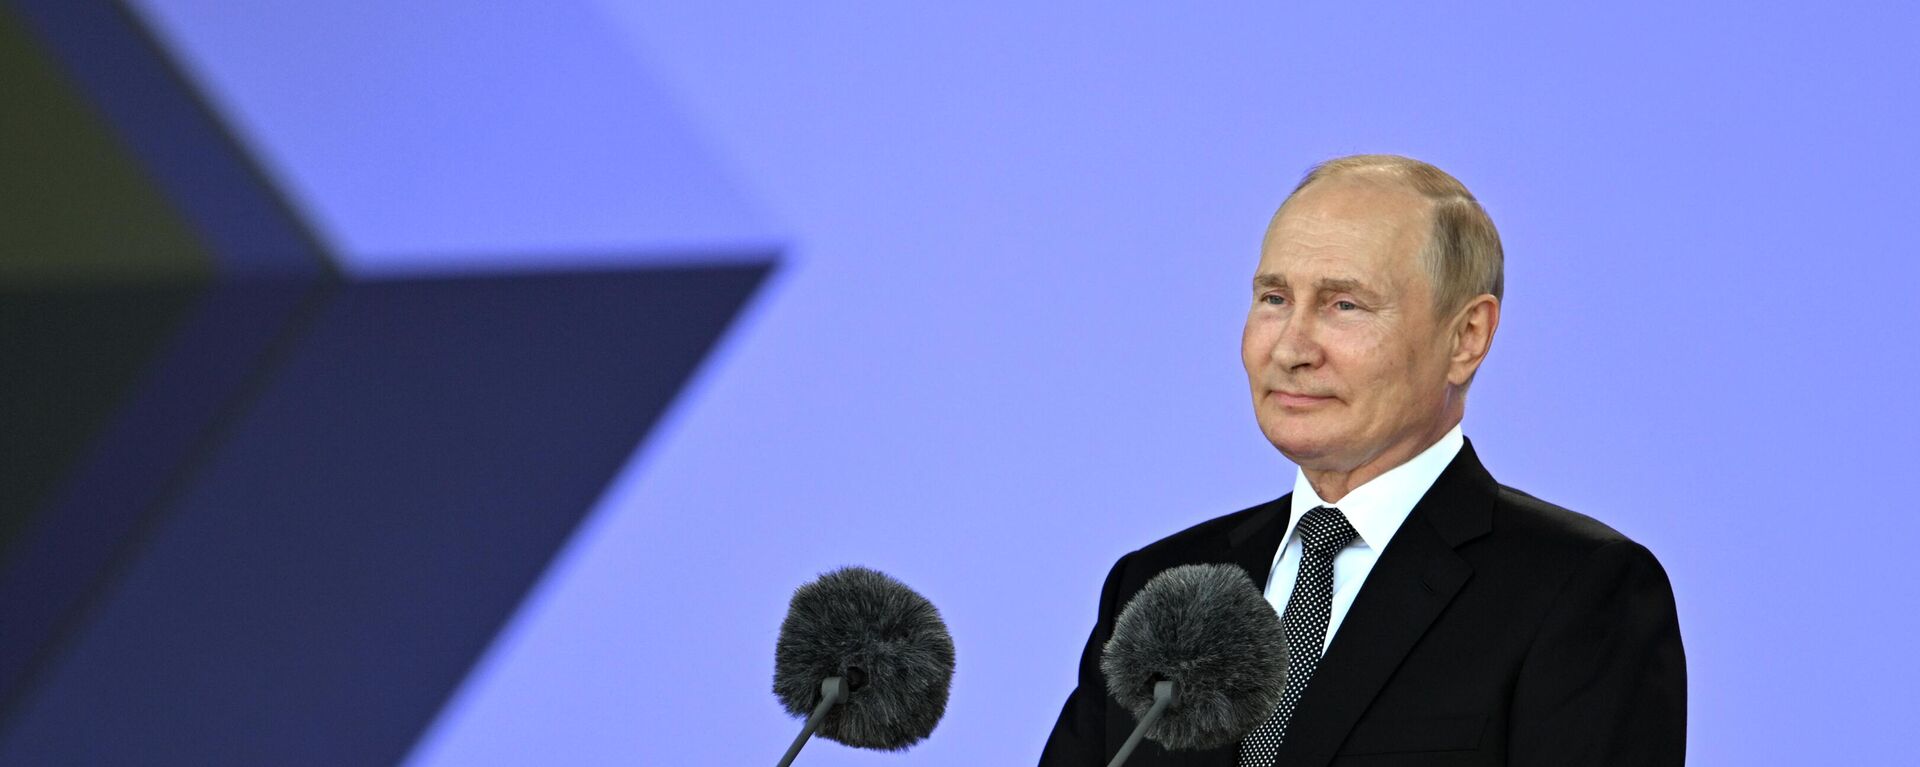 Vladímir Putin, el presidente ruso, pronuncia un discurso durante una ceremonia de apertura del Foro Internacional Técnico Militar Army 2022  - Sputnik Mundo, 1920, 15.08.2022